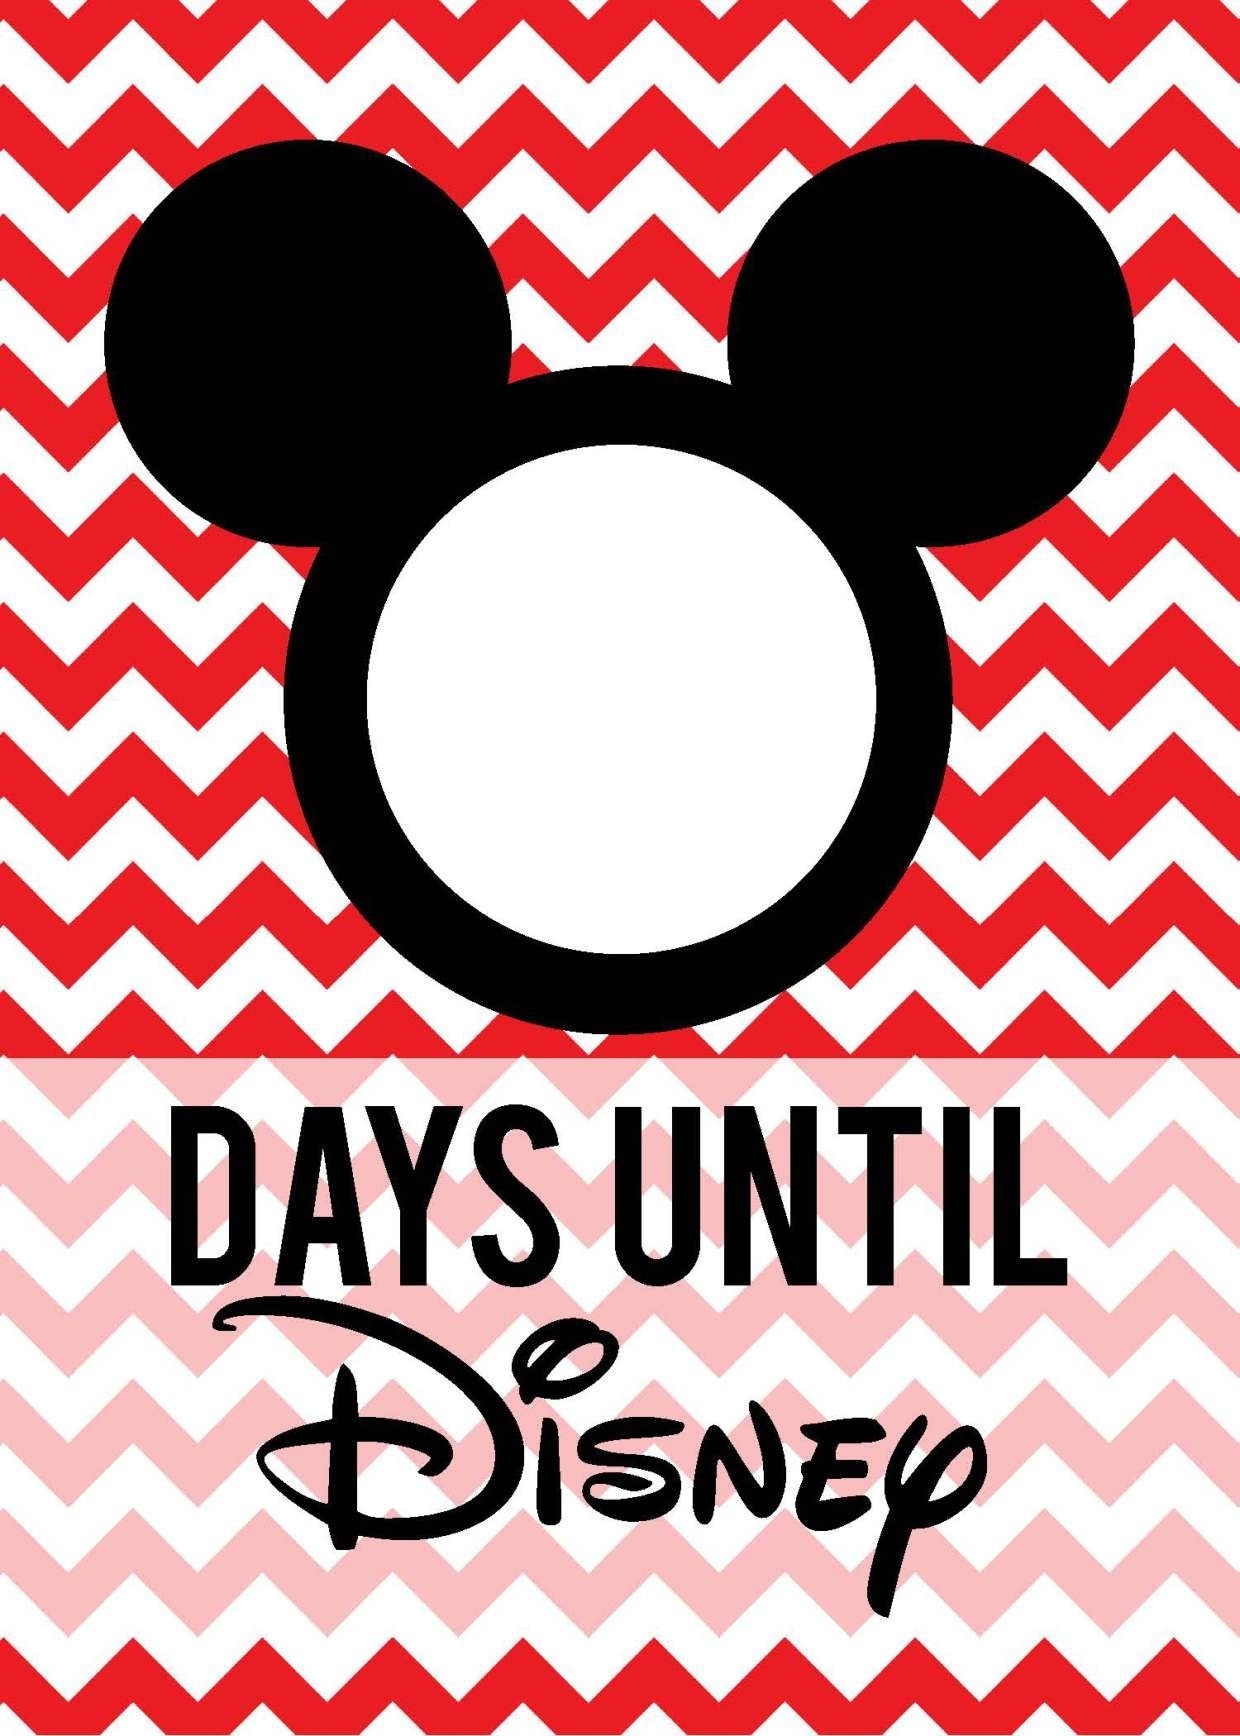 Free Download: Countdown To Disney | Disney Countdown Countdown To Disney World Trip